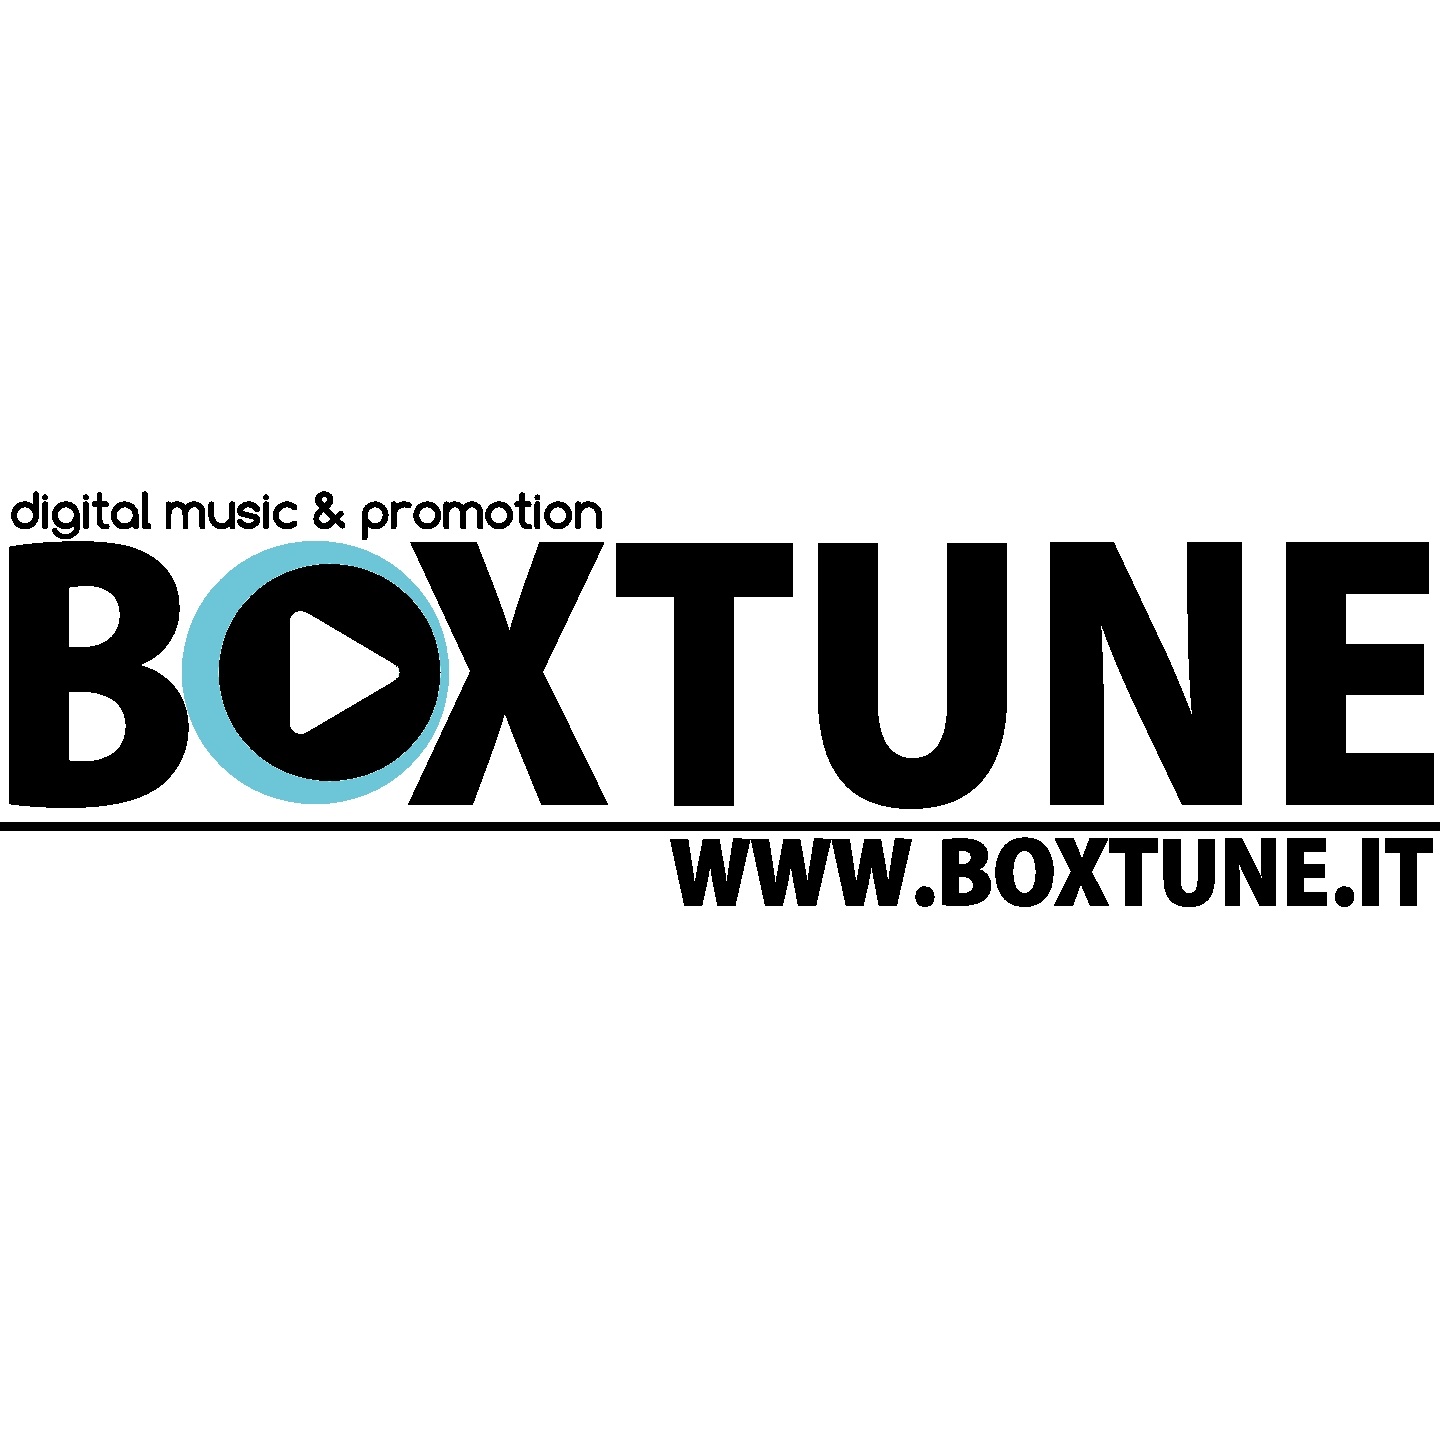 Boxtune: da oggi online il sito della piattaforma di distribuzione e promozione discografica. In partnership con Believe Digital.